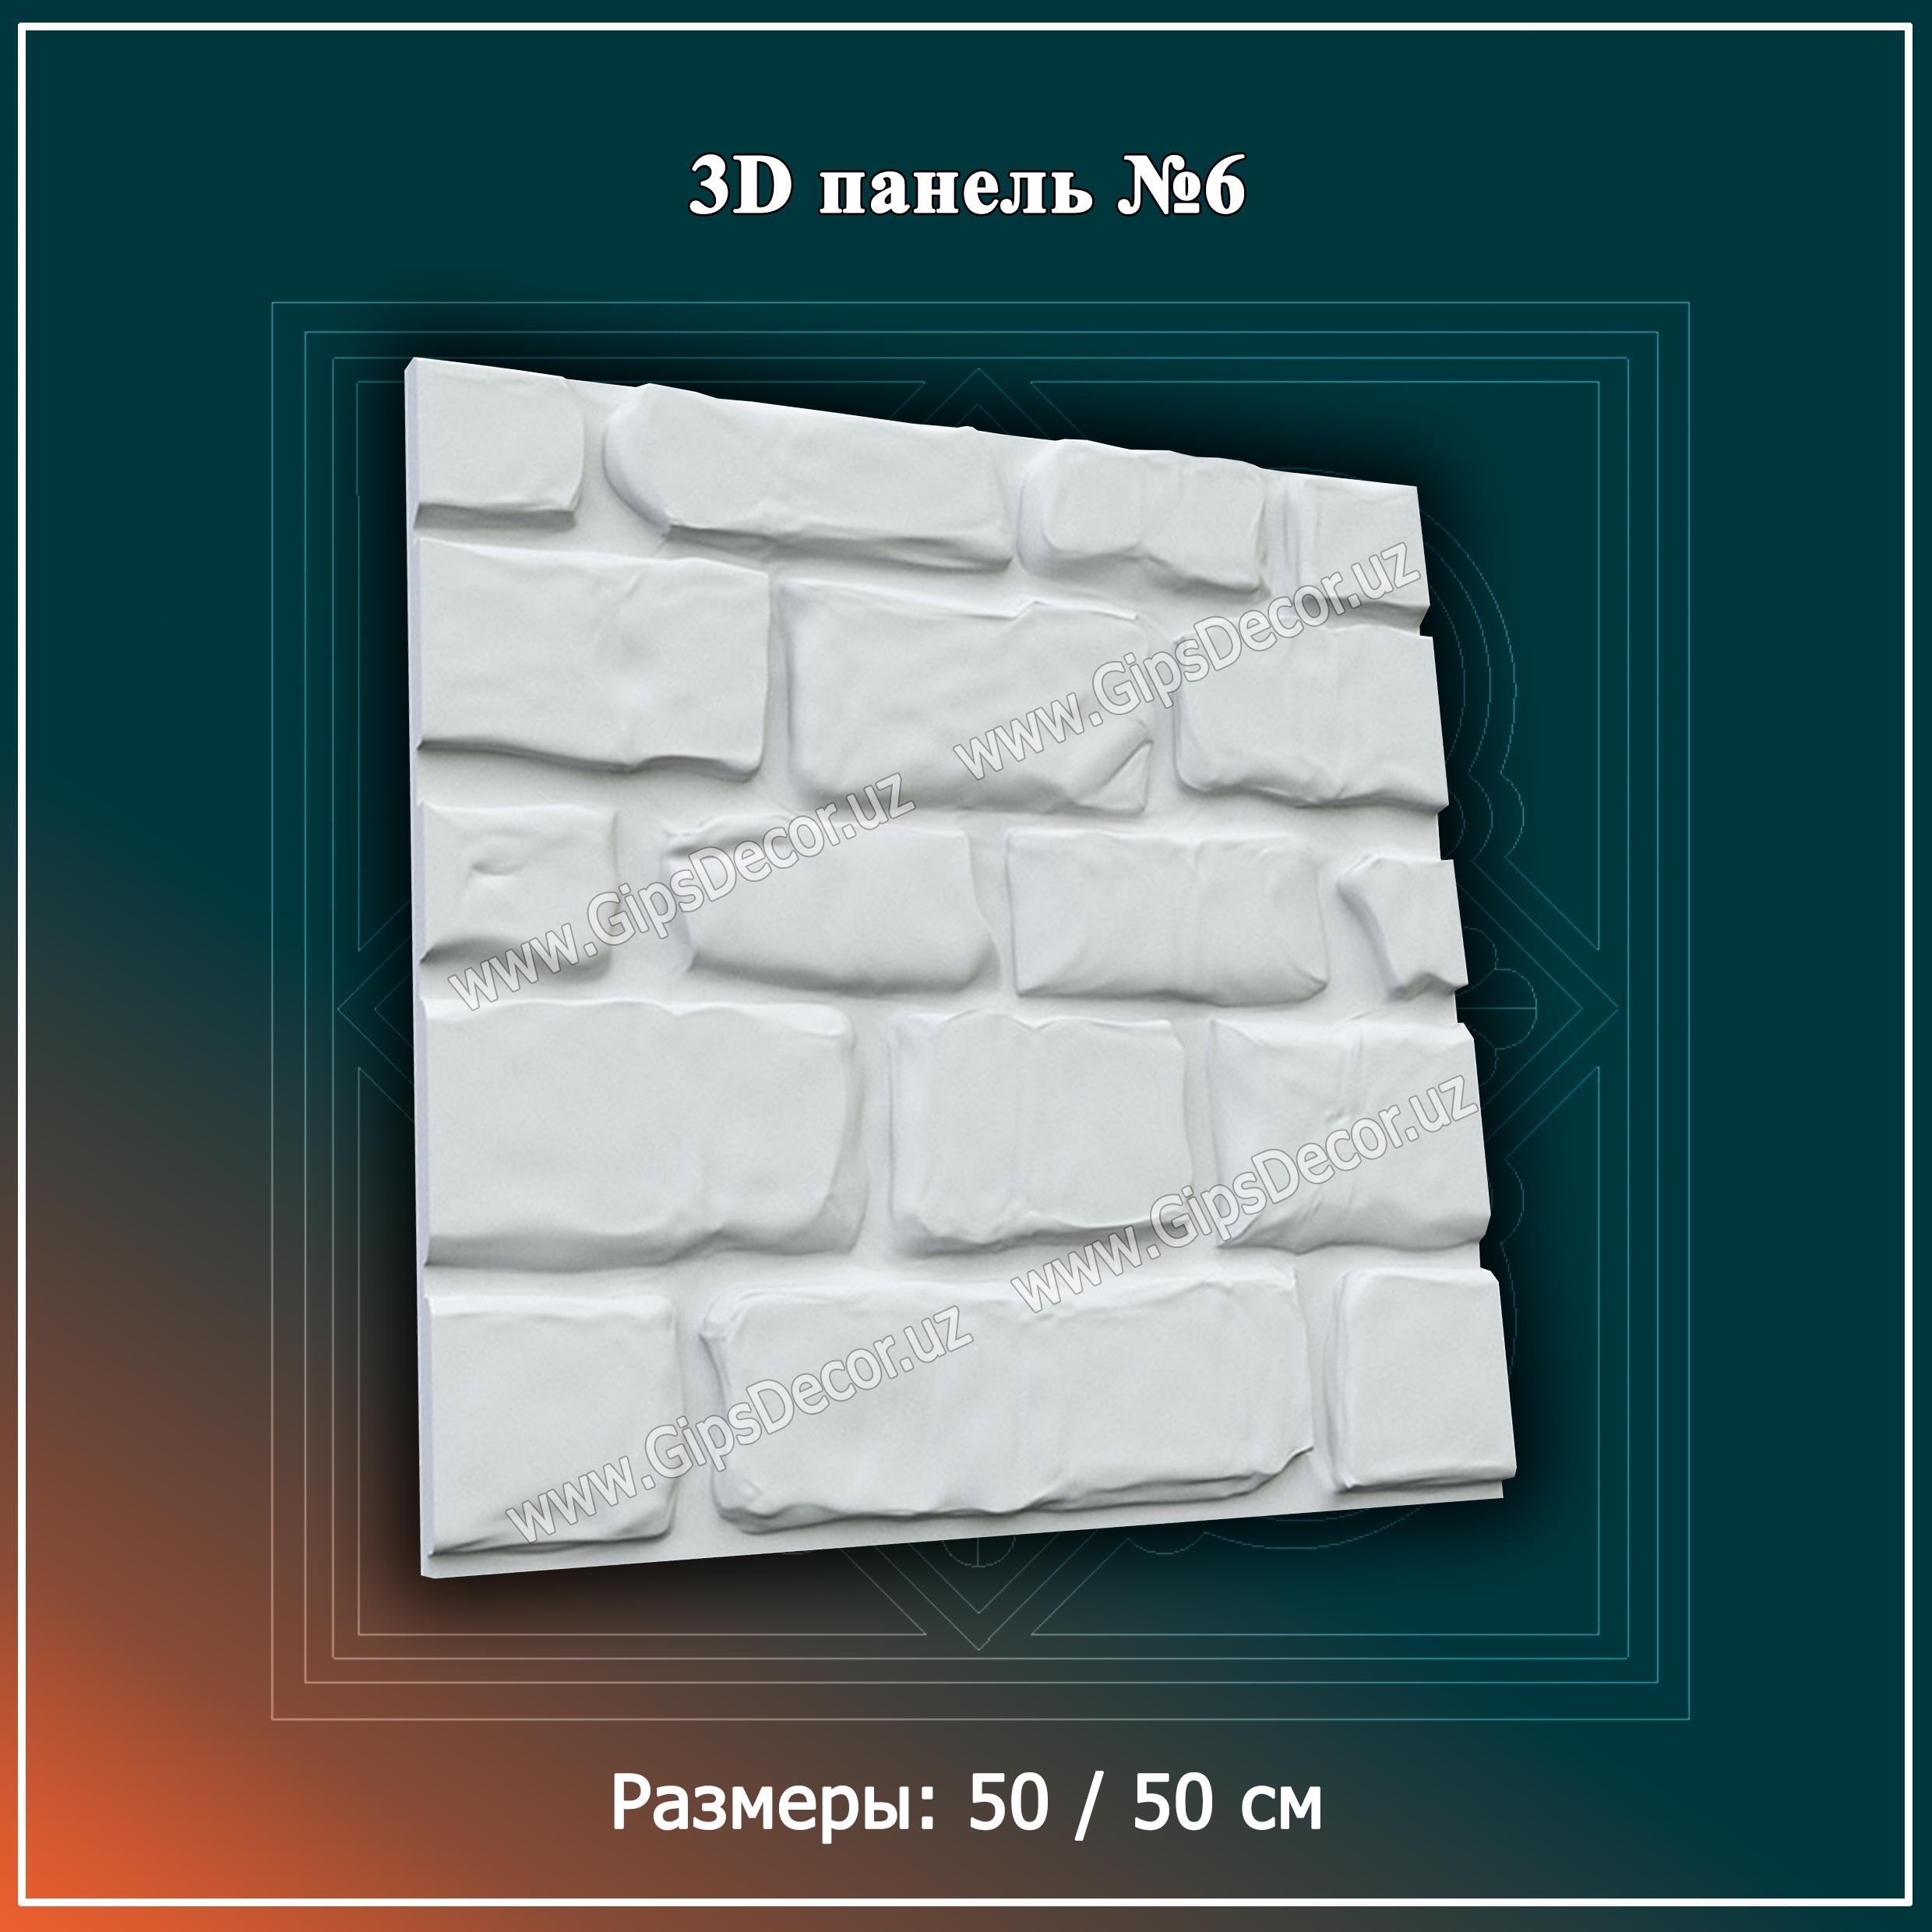 3D панель №6